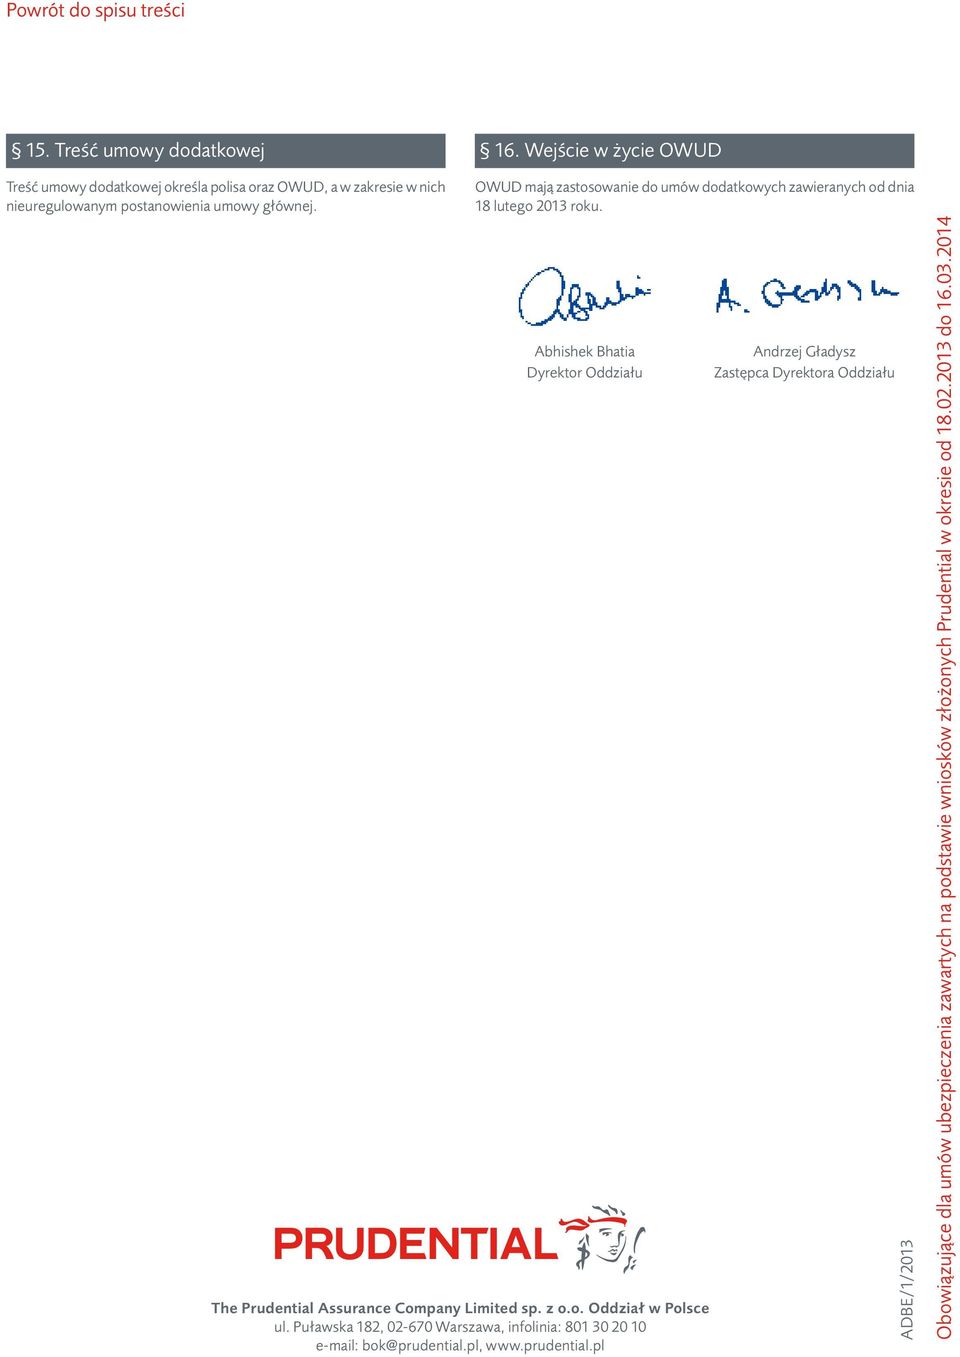 OWUD mają zastosowanie do umów dodatkowych zawieranych od dnia 18 lutego 2013 roku.